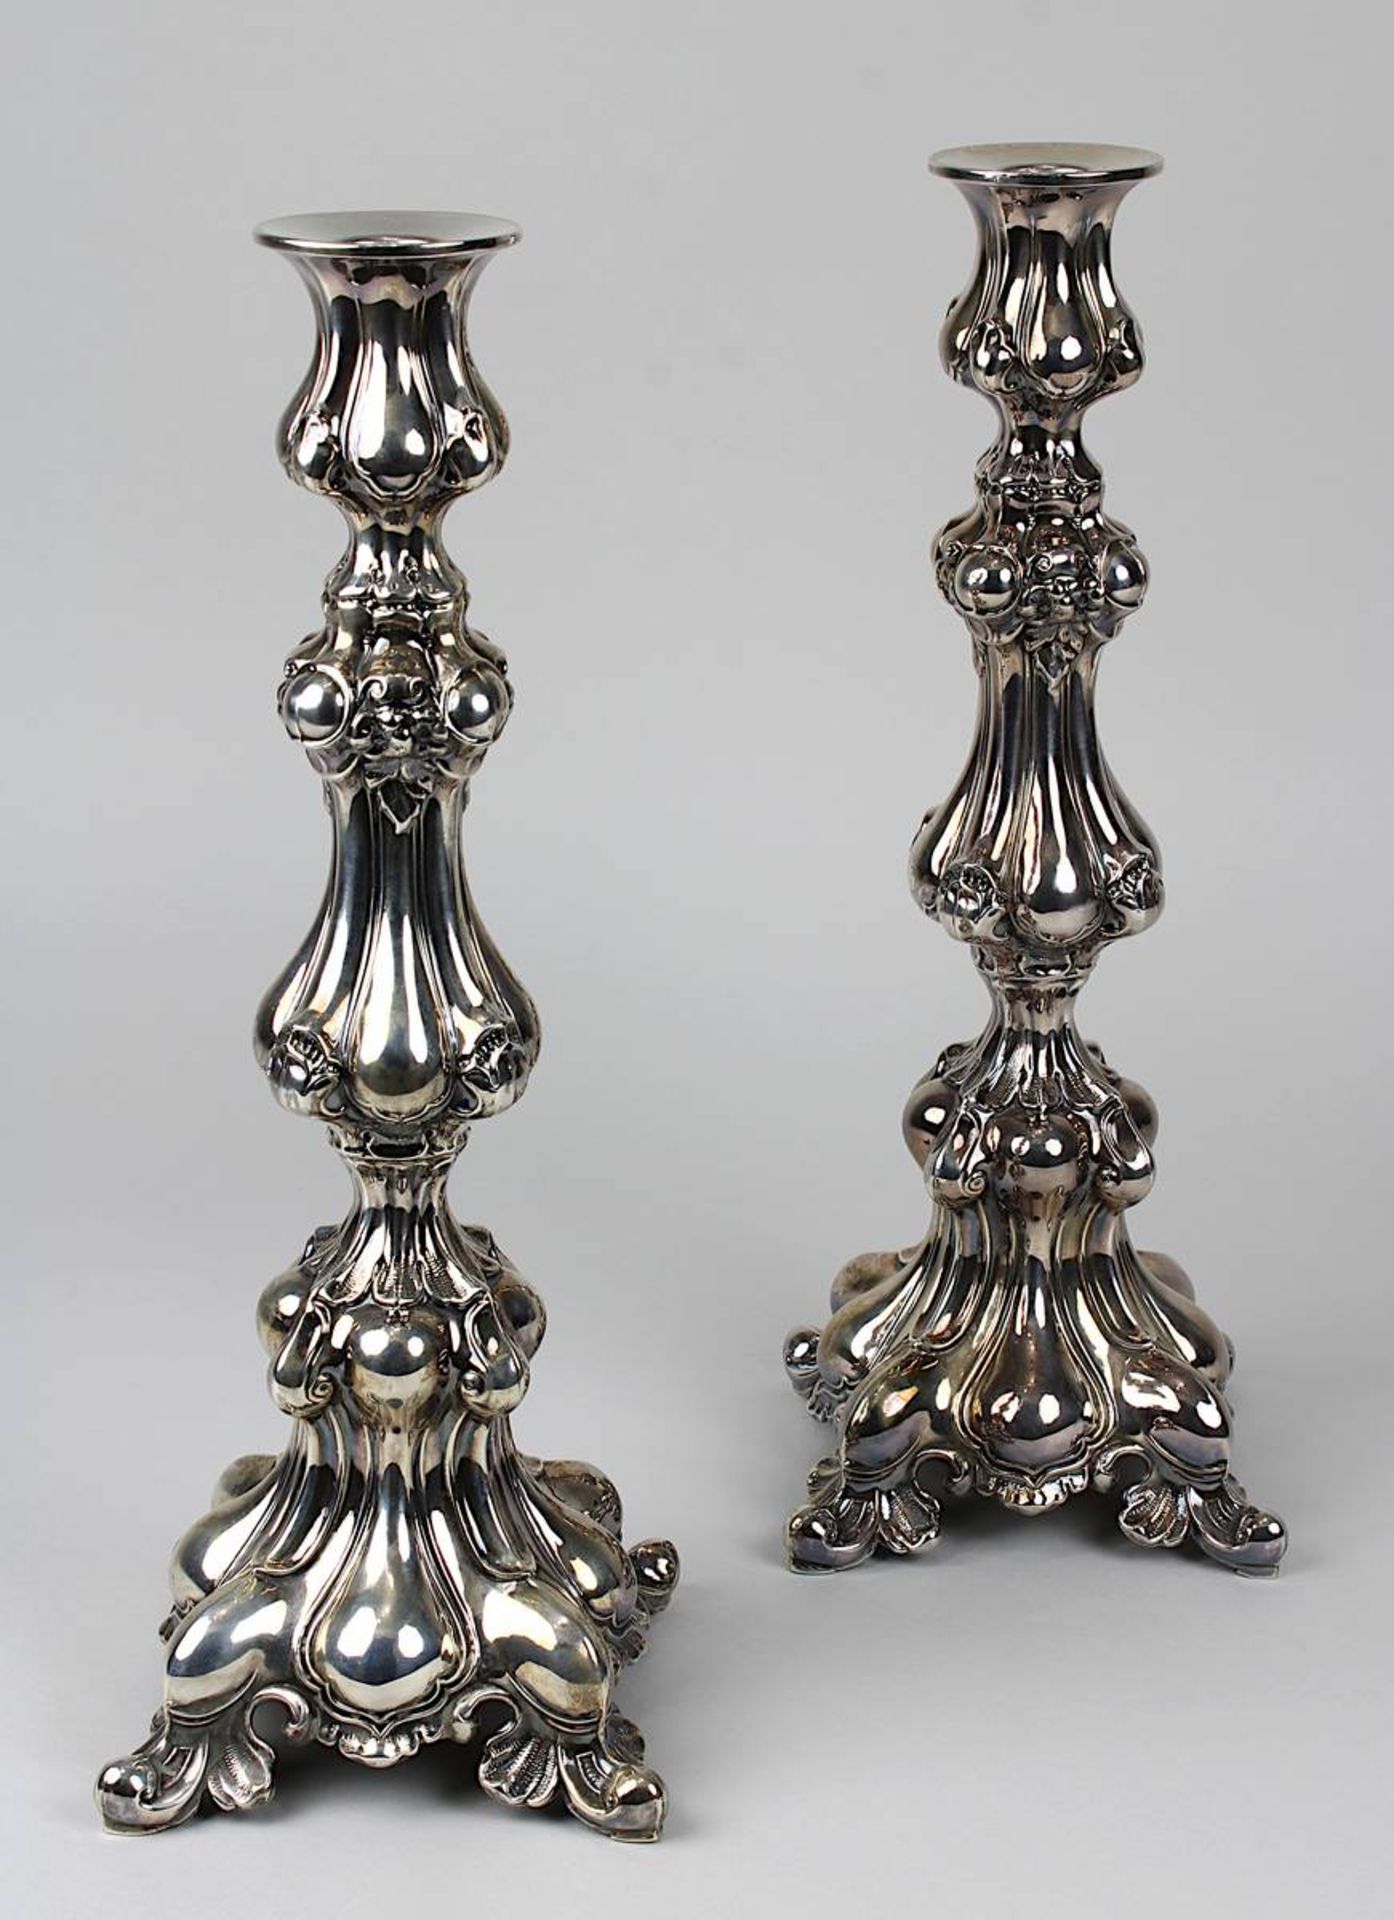 Paar Silber-Leuchter, Deutschland um 1850, dem Barockstil nachempfunden, vierpassige Grundform mit